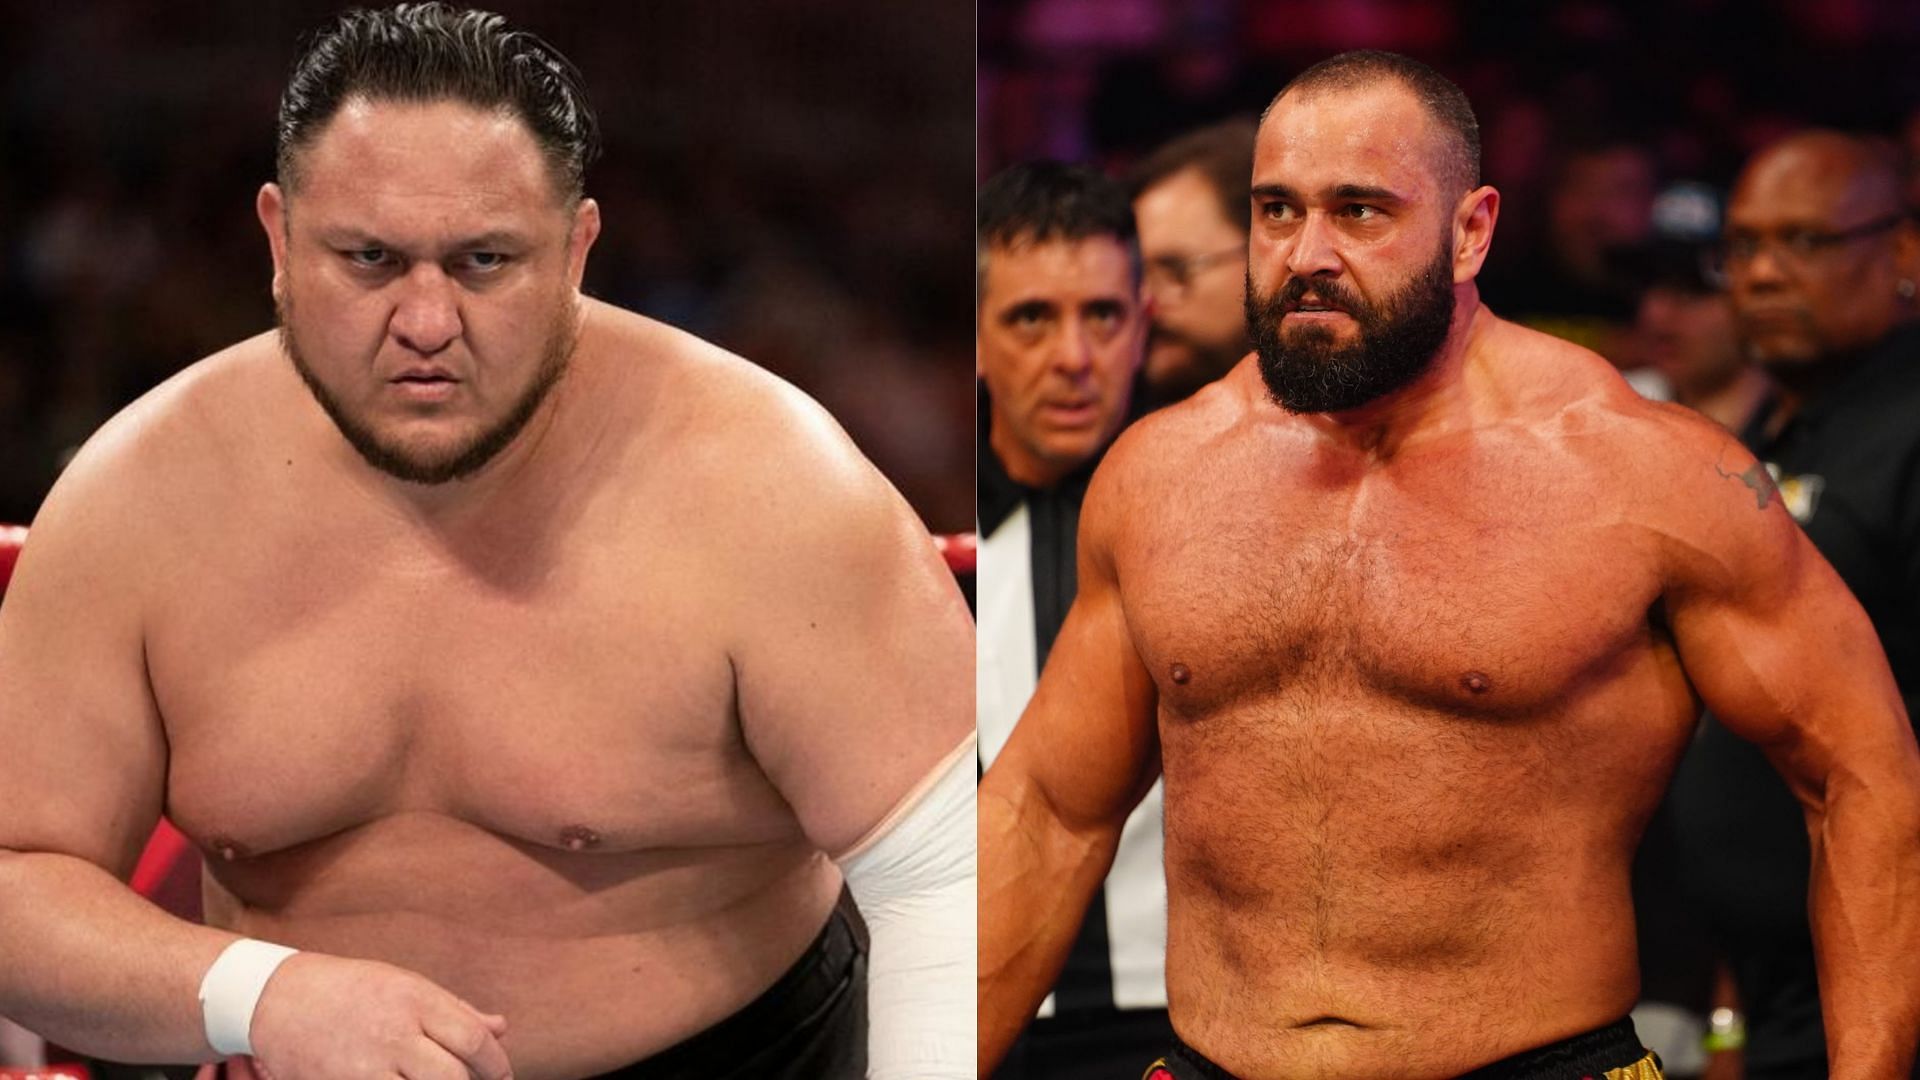 Samoa Joe (left) has faced AEW star Miro (right) in WWE